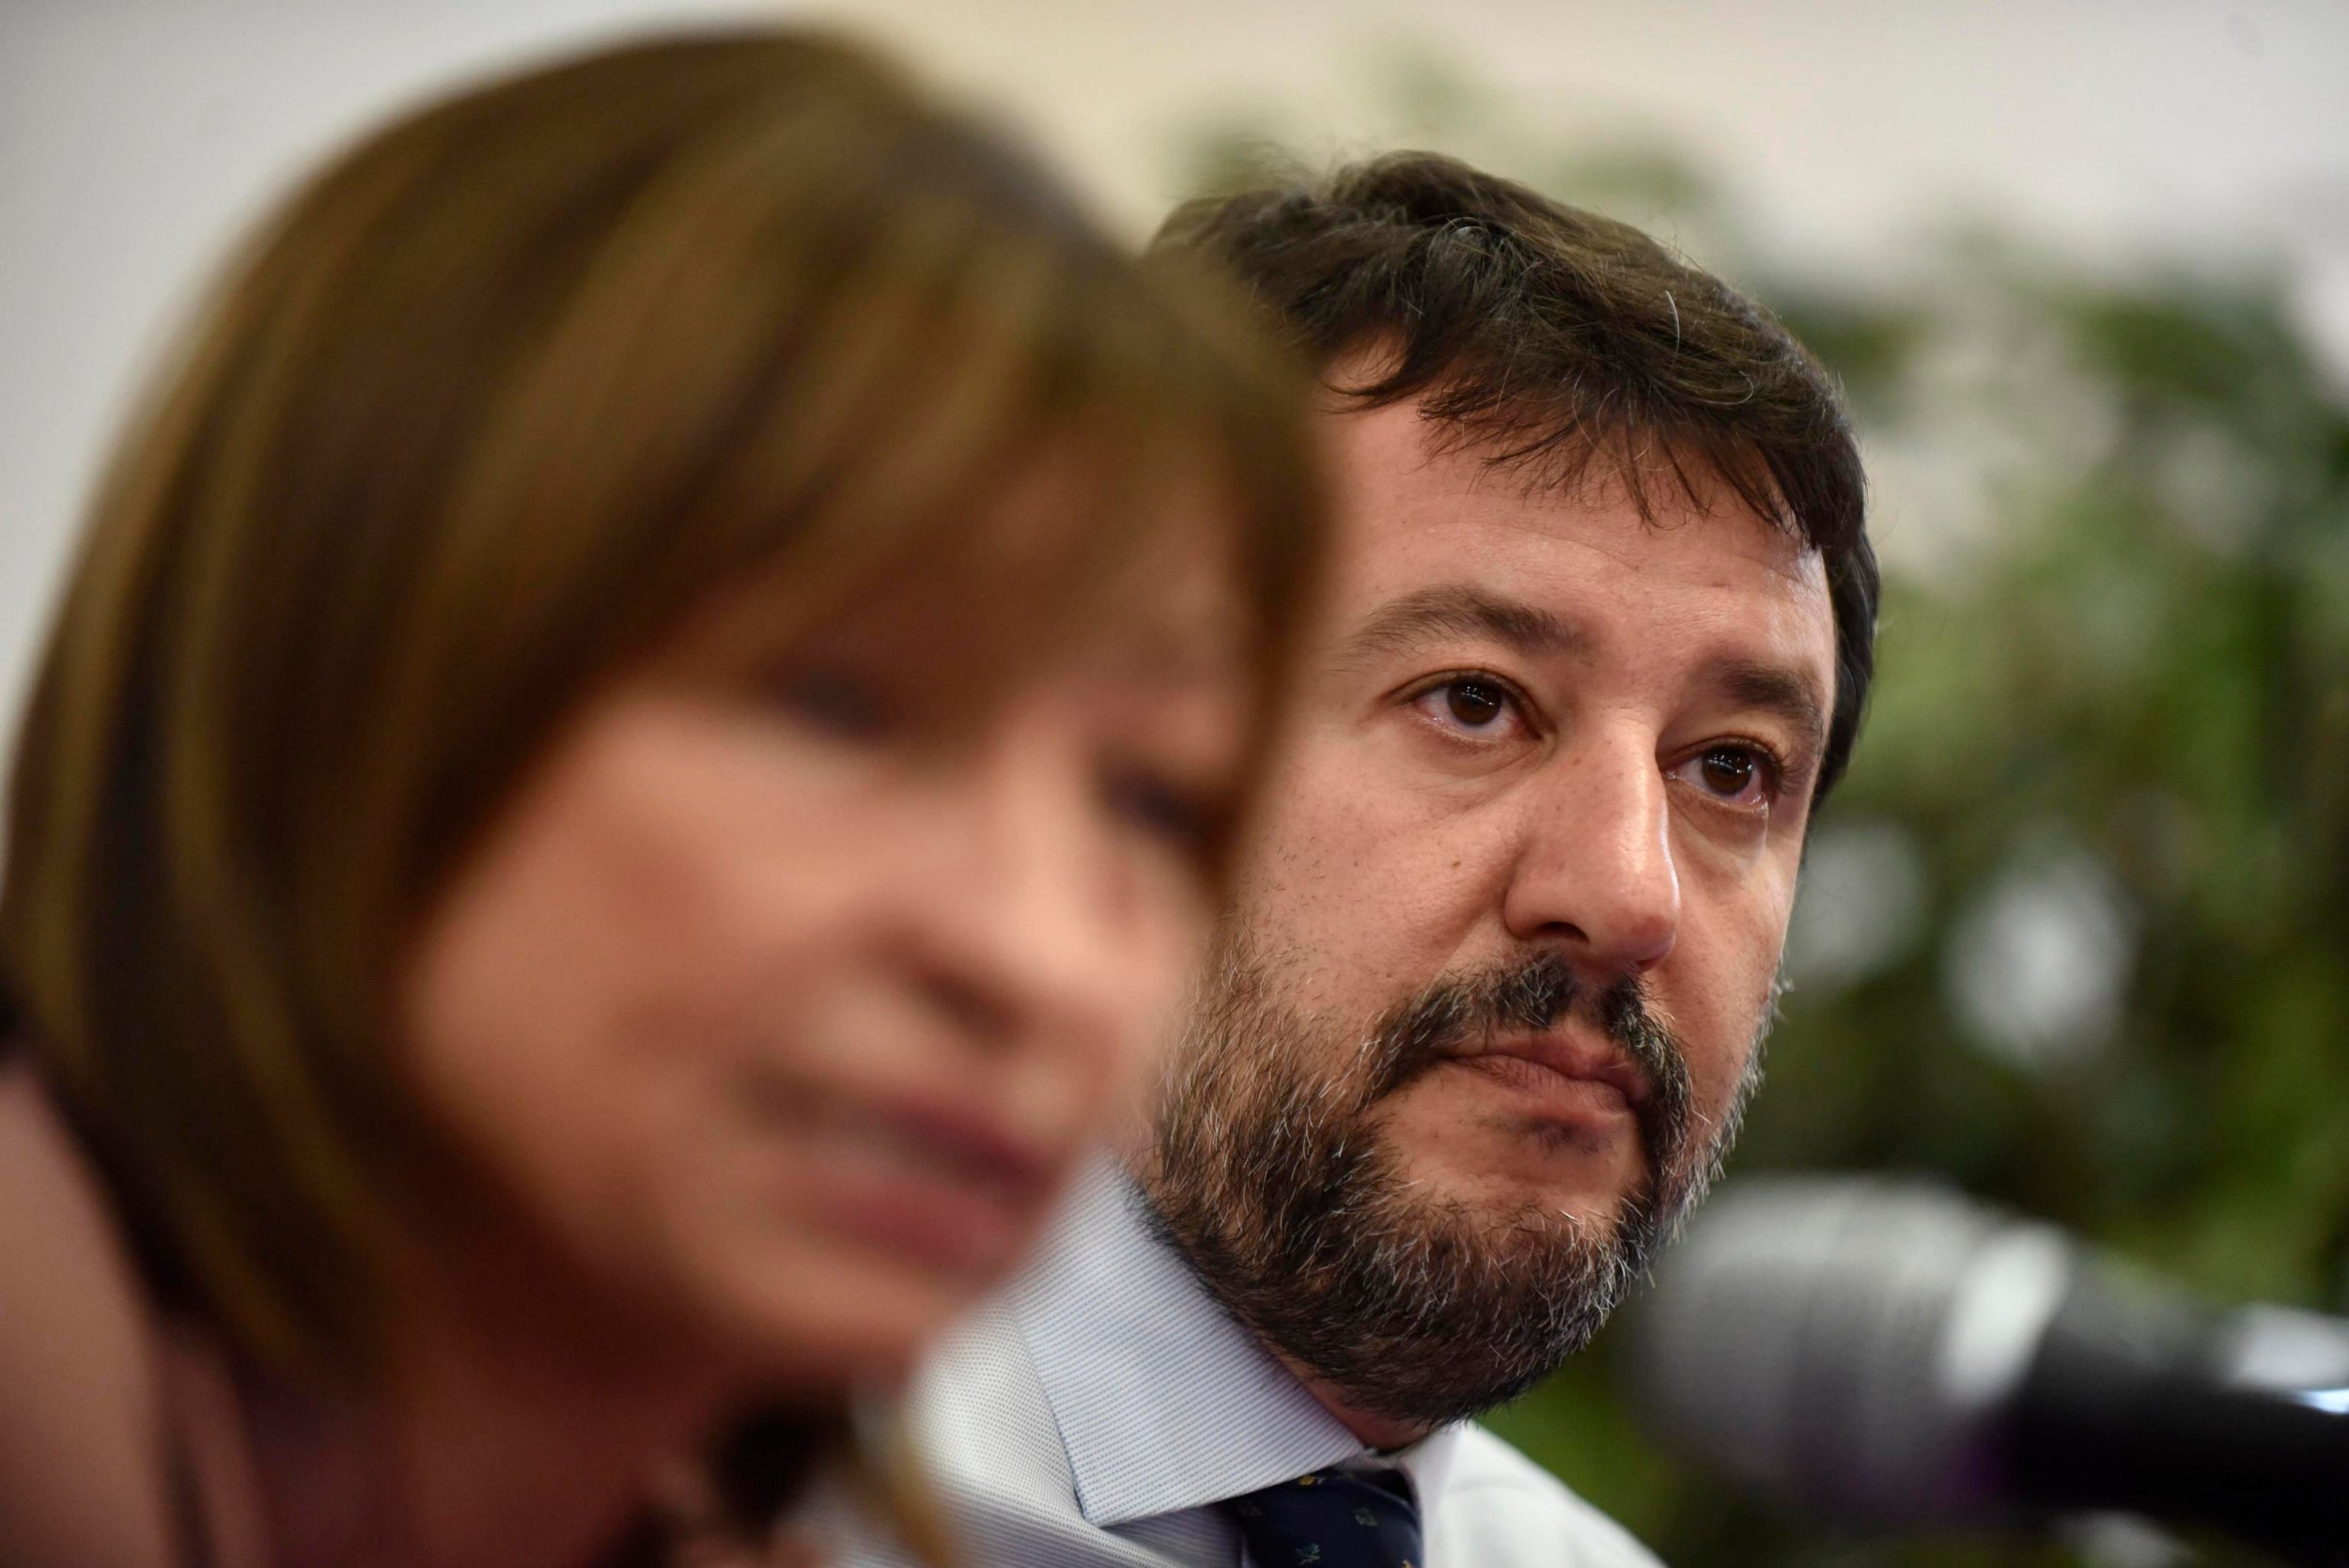 Winning candidate Donatella Tesei with Matteo Salvini